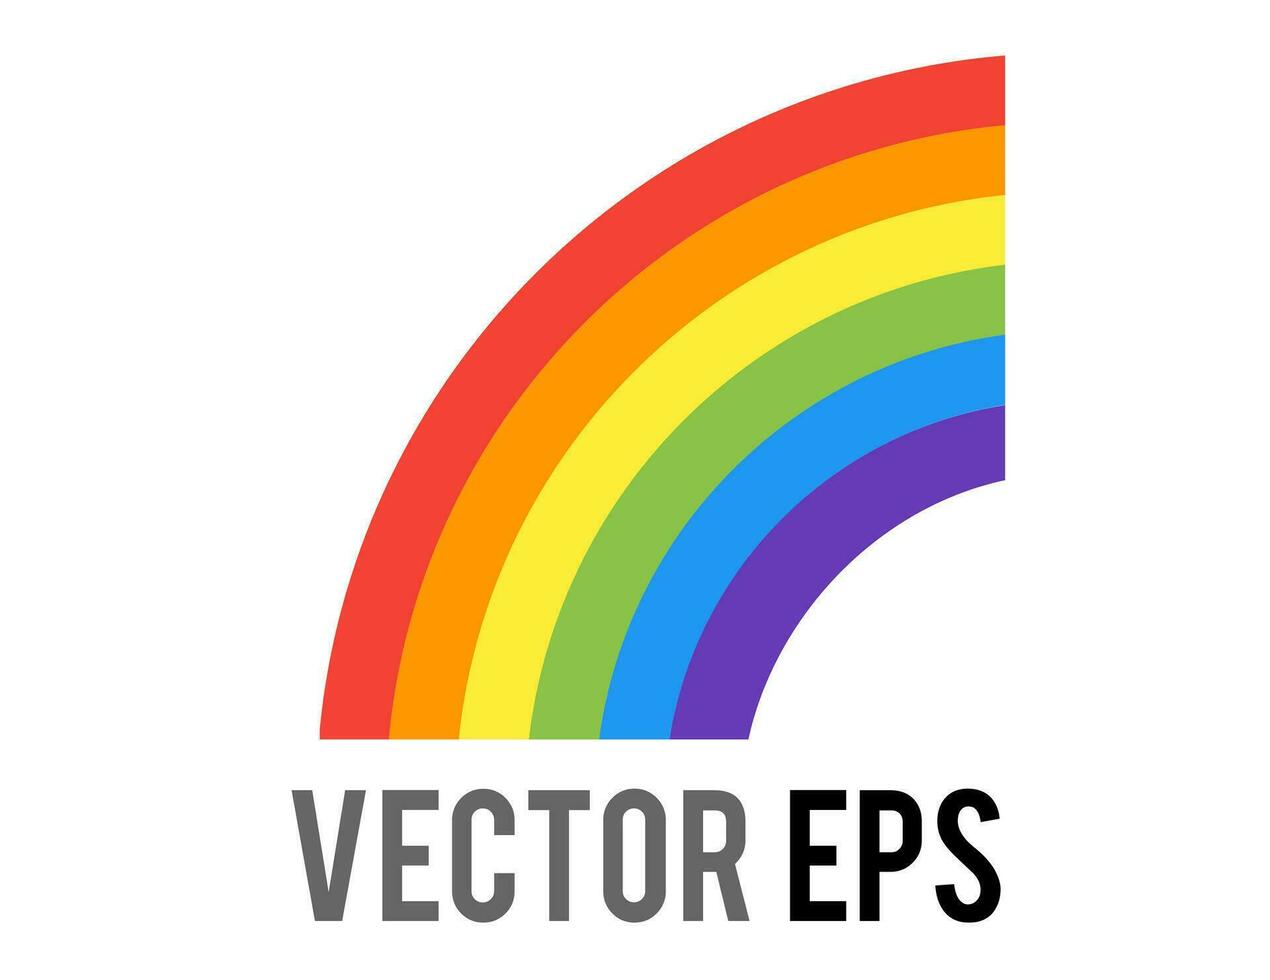 vector voor de helft van een vol regenboog icoon, tonen zes bands van kleur rood, oranje, geel, groente, blauw, paars